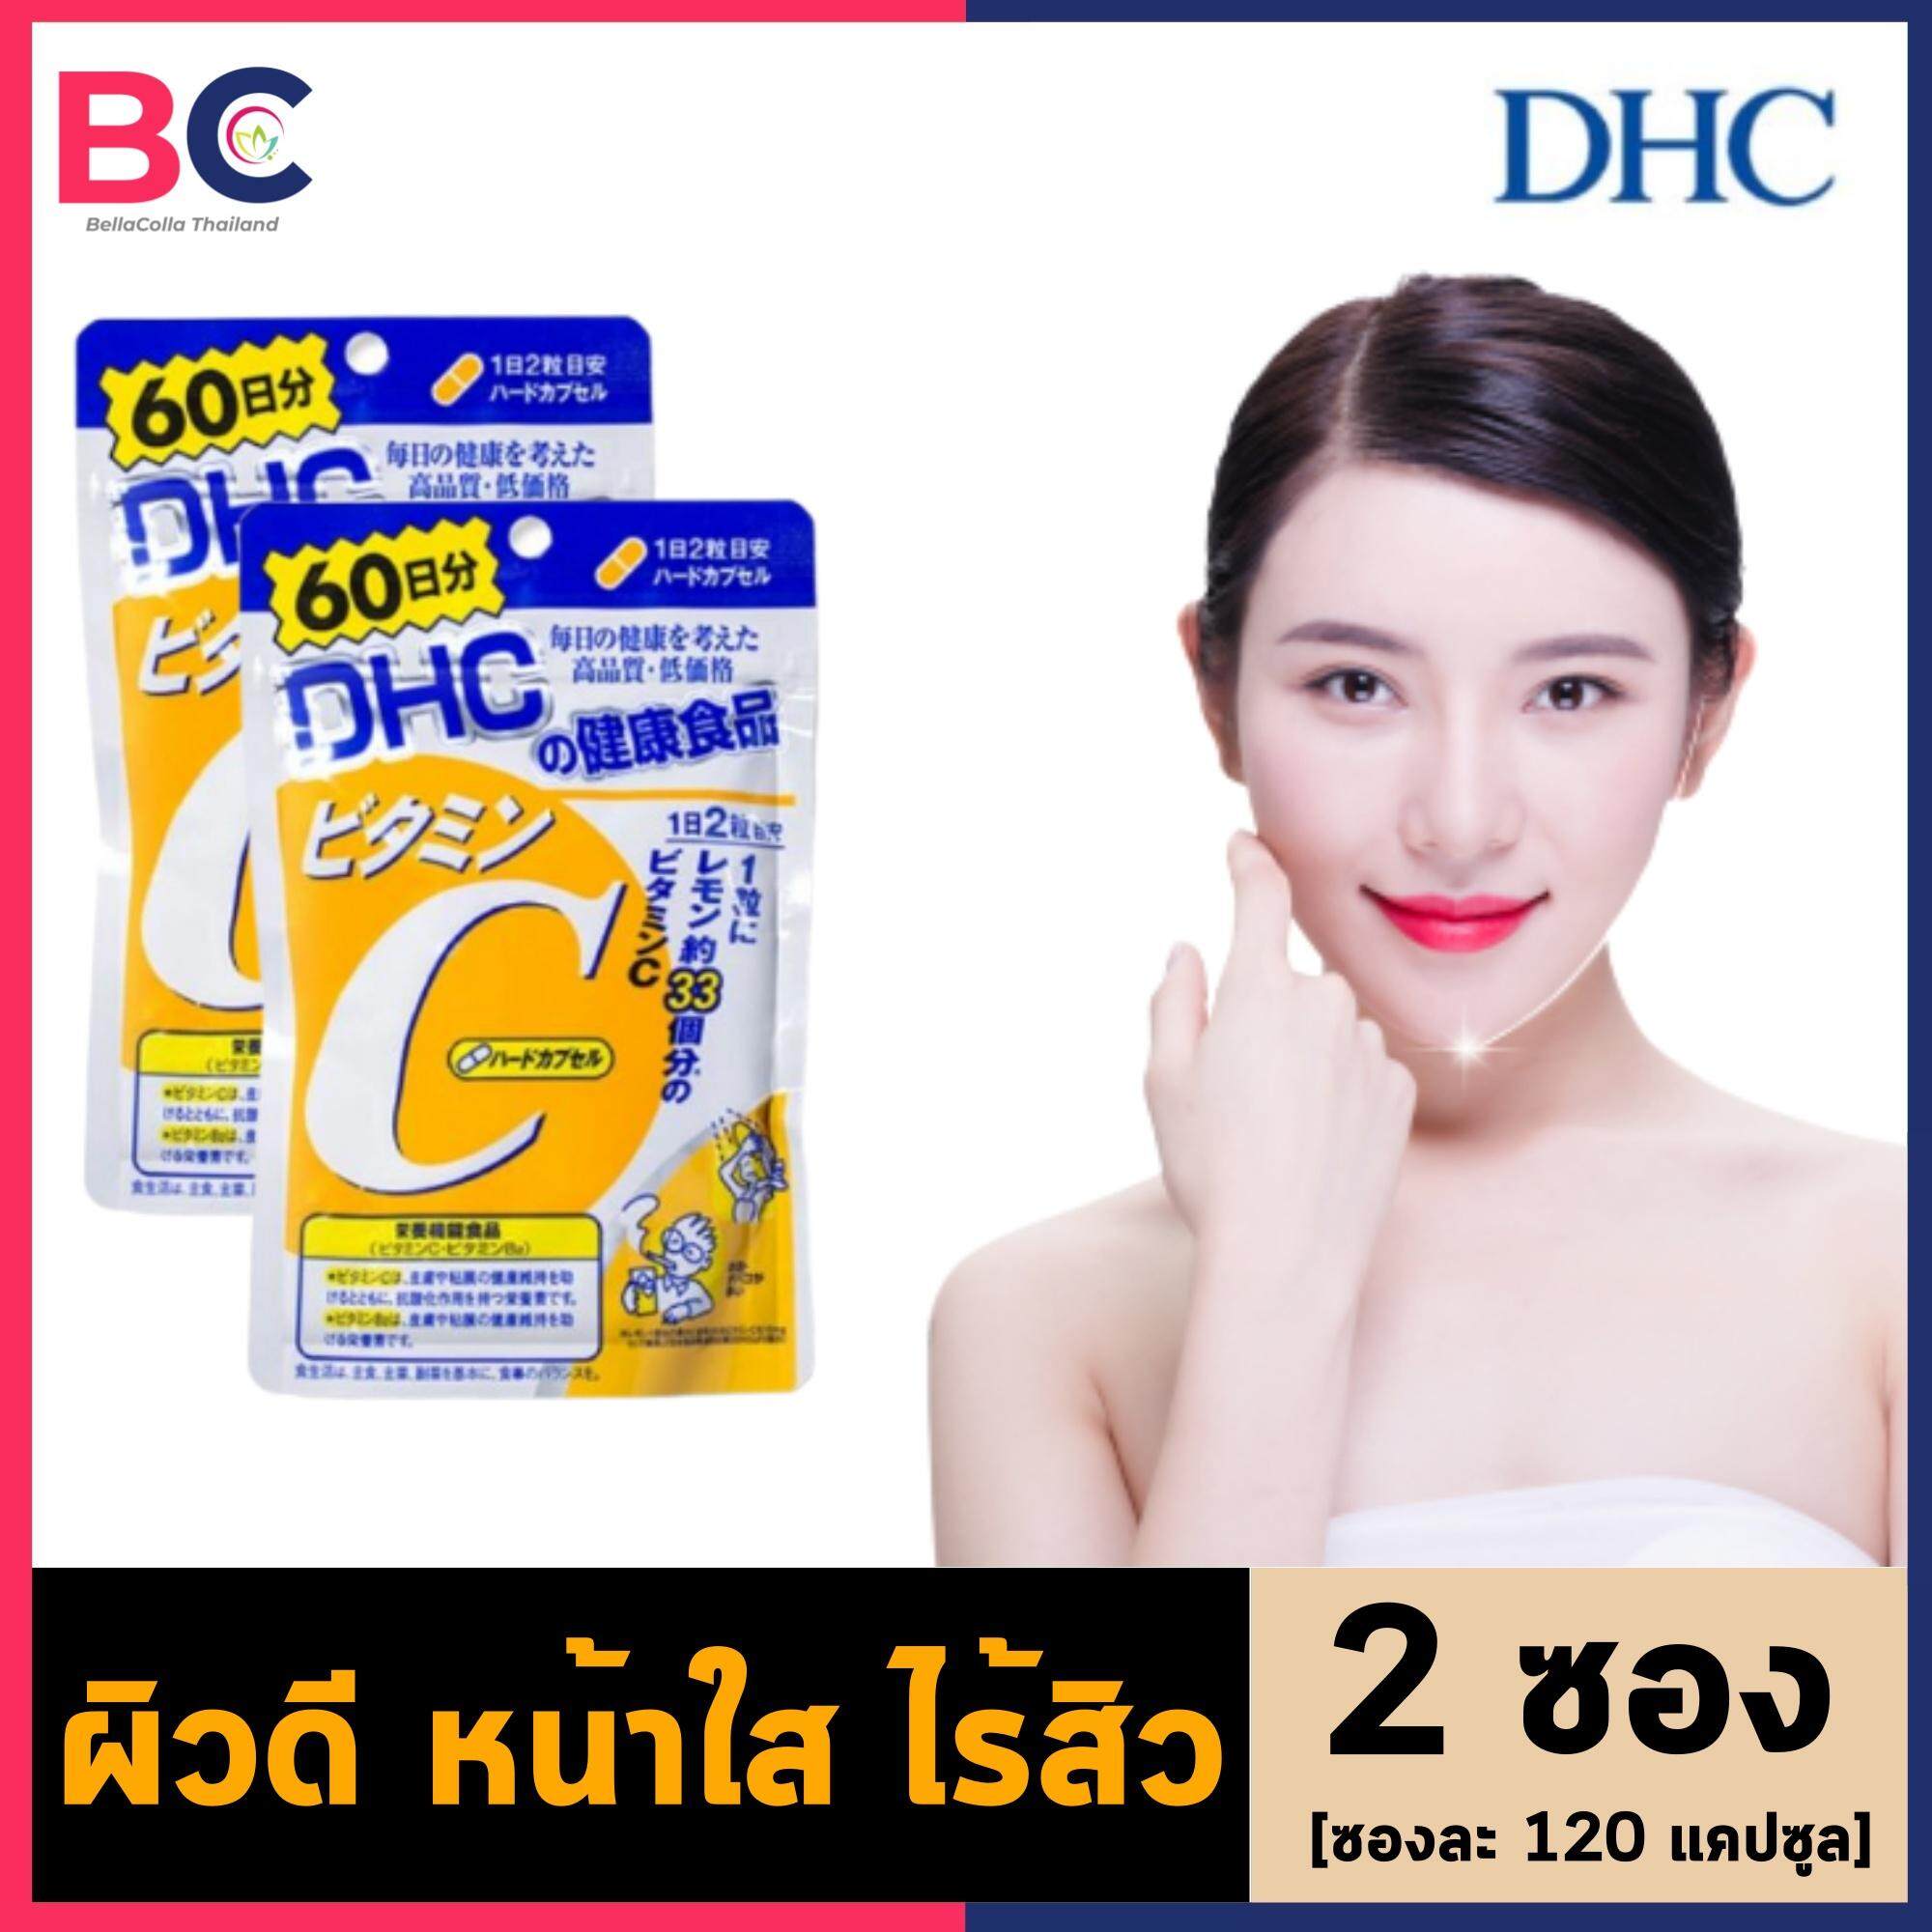 วิตามินซี DHC [2 ซอง] [120 แคปซูล / 60 วัน] DHC Vitamin C วิตามิน DHC